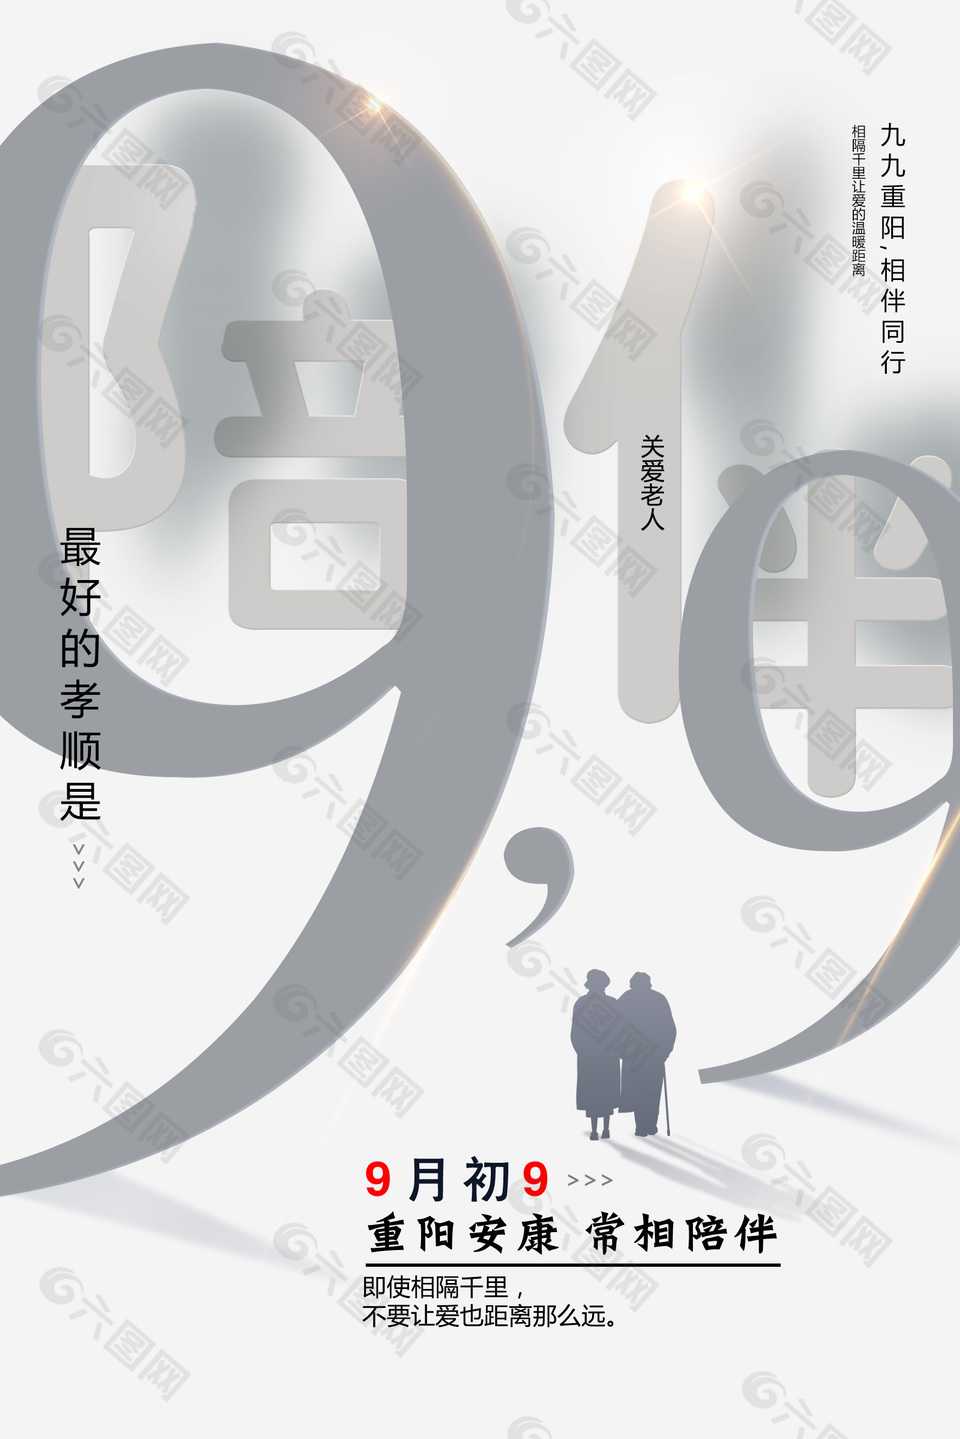 9月初9重阳安康节日宣传海报设计